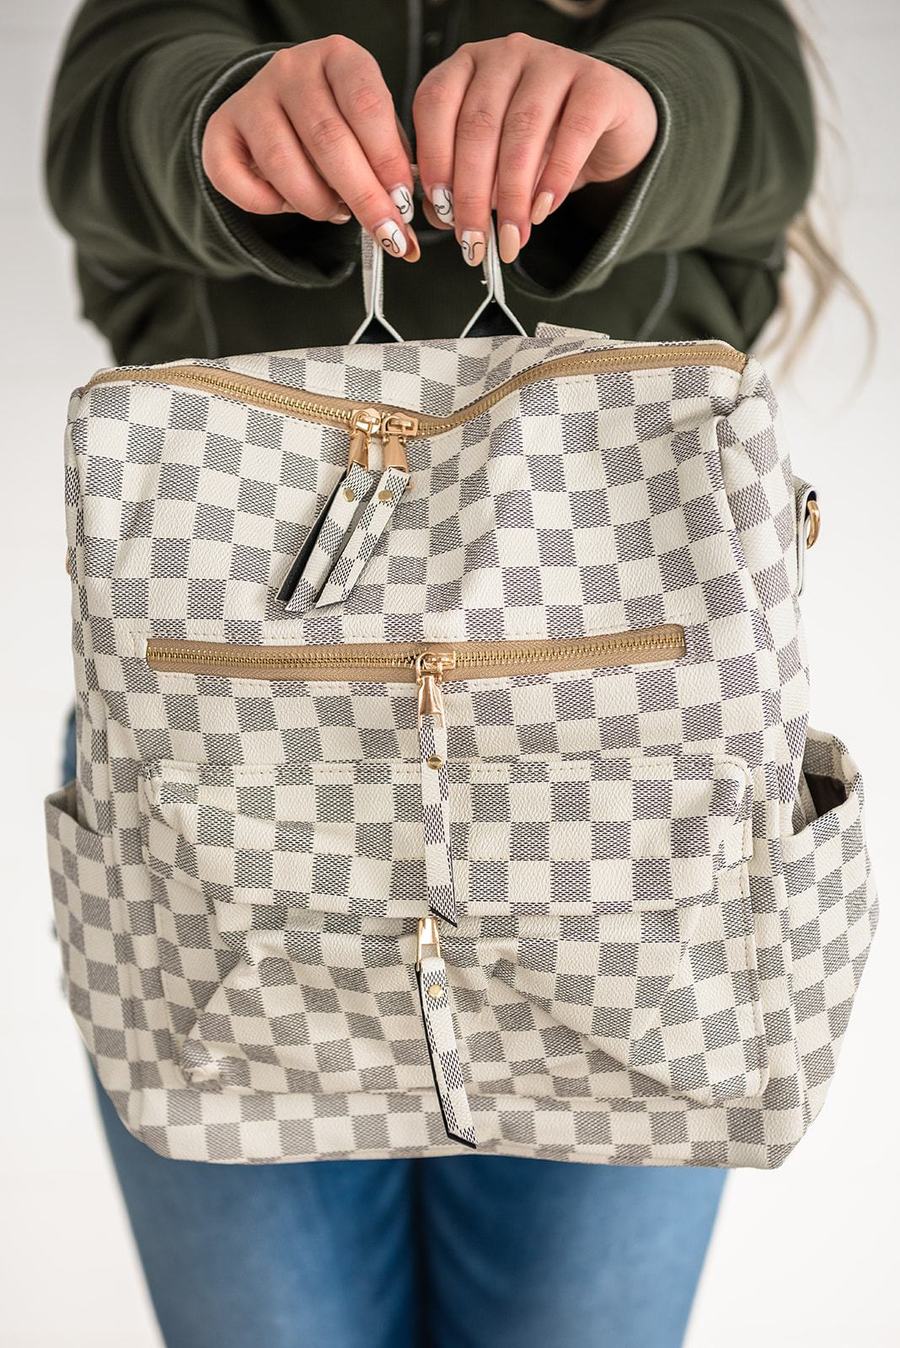 Handbags/Purses/Backpacks